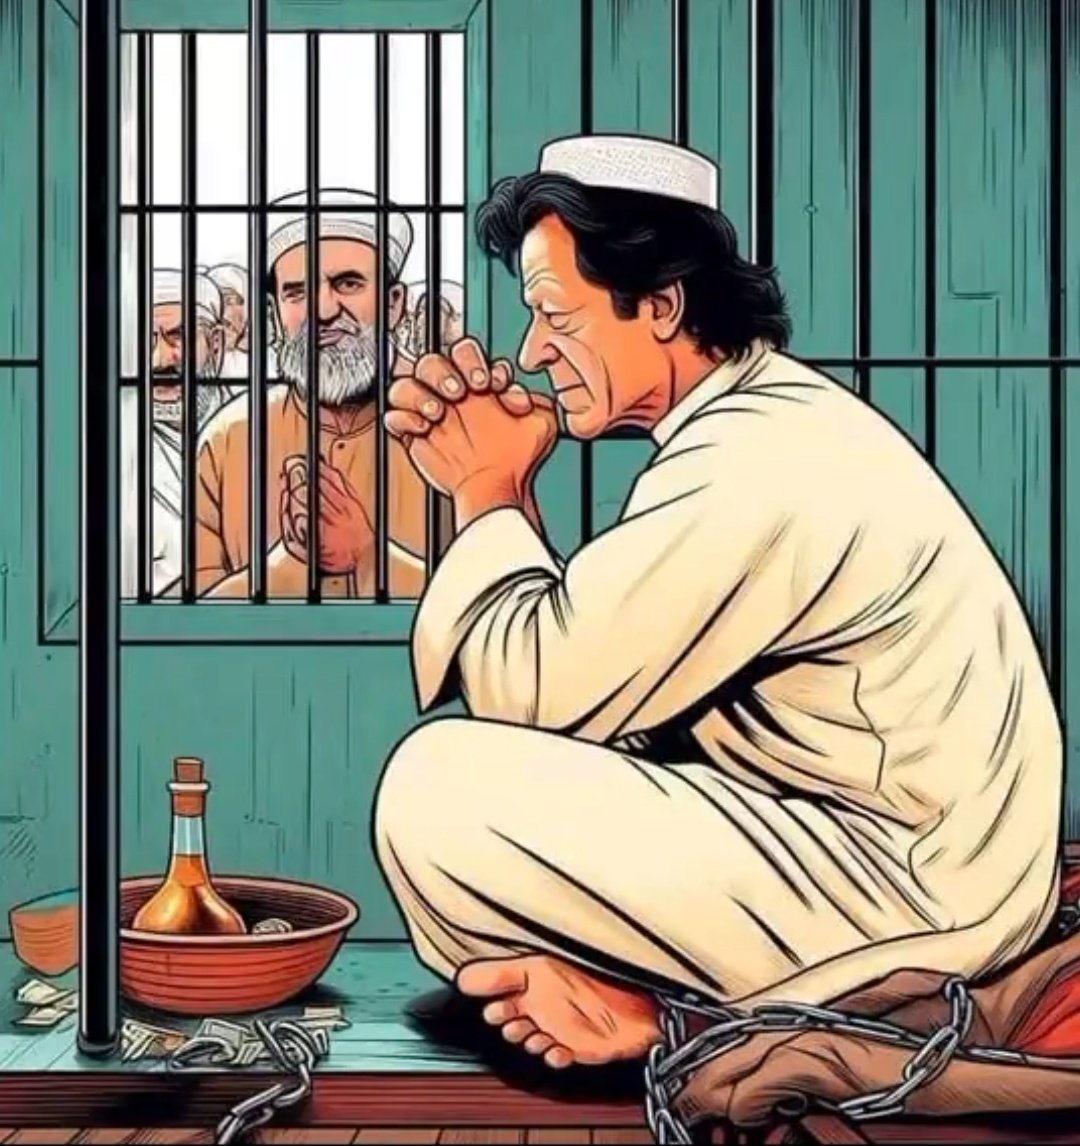 یا اللہ عمران خان کو قید سے رہائی نصیب فرما آمین